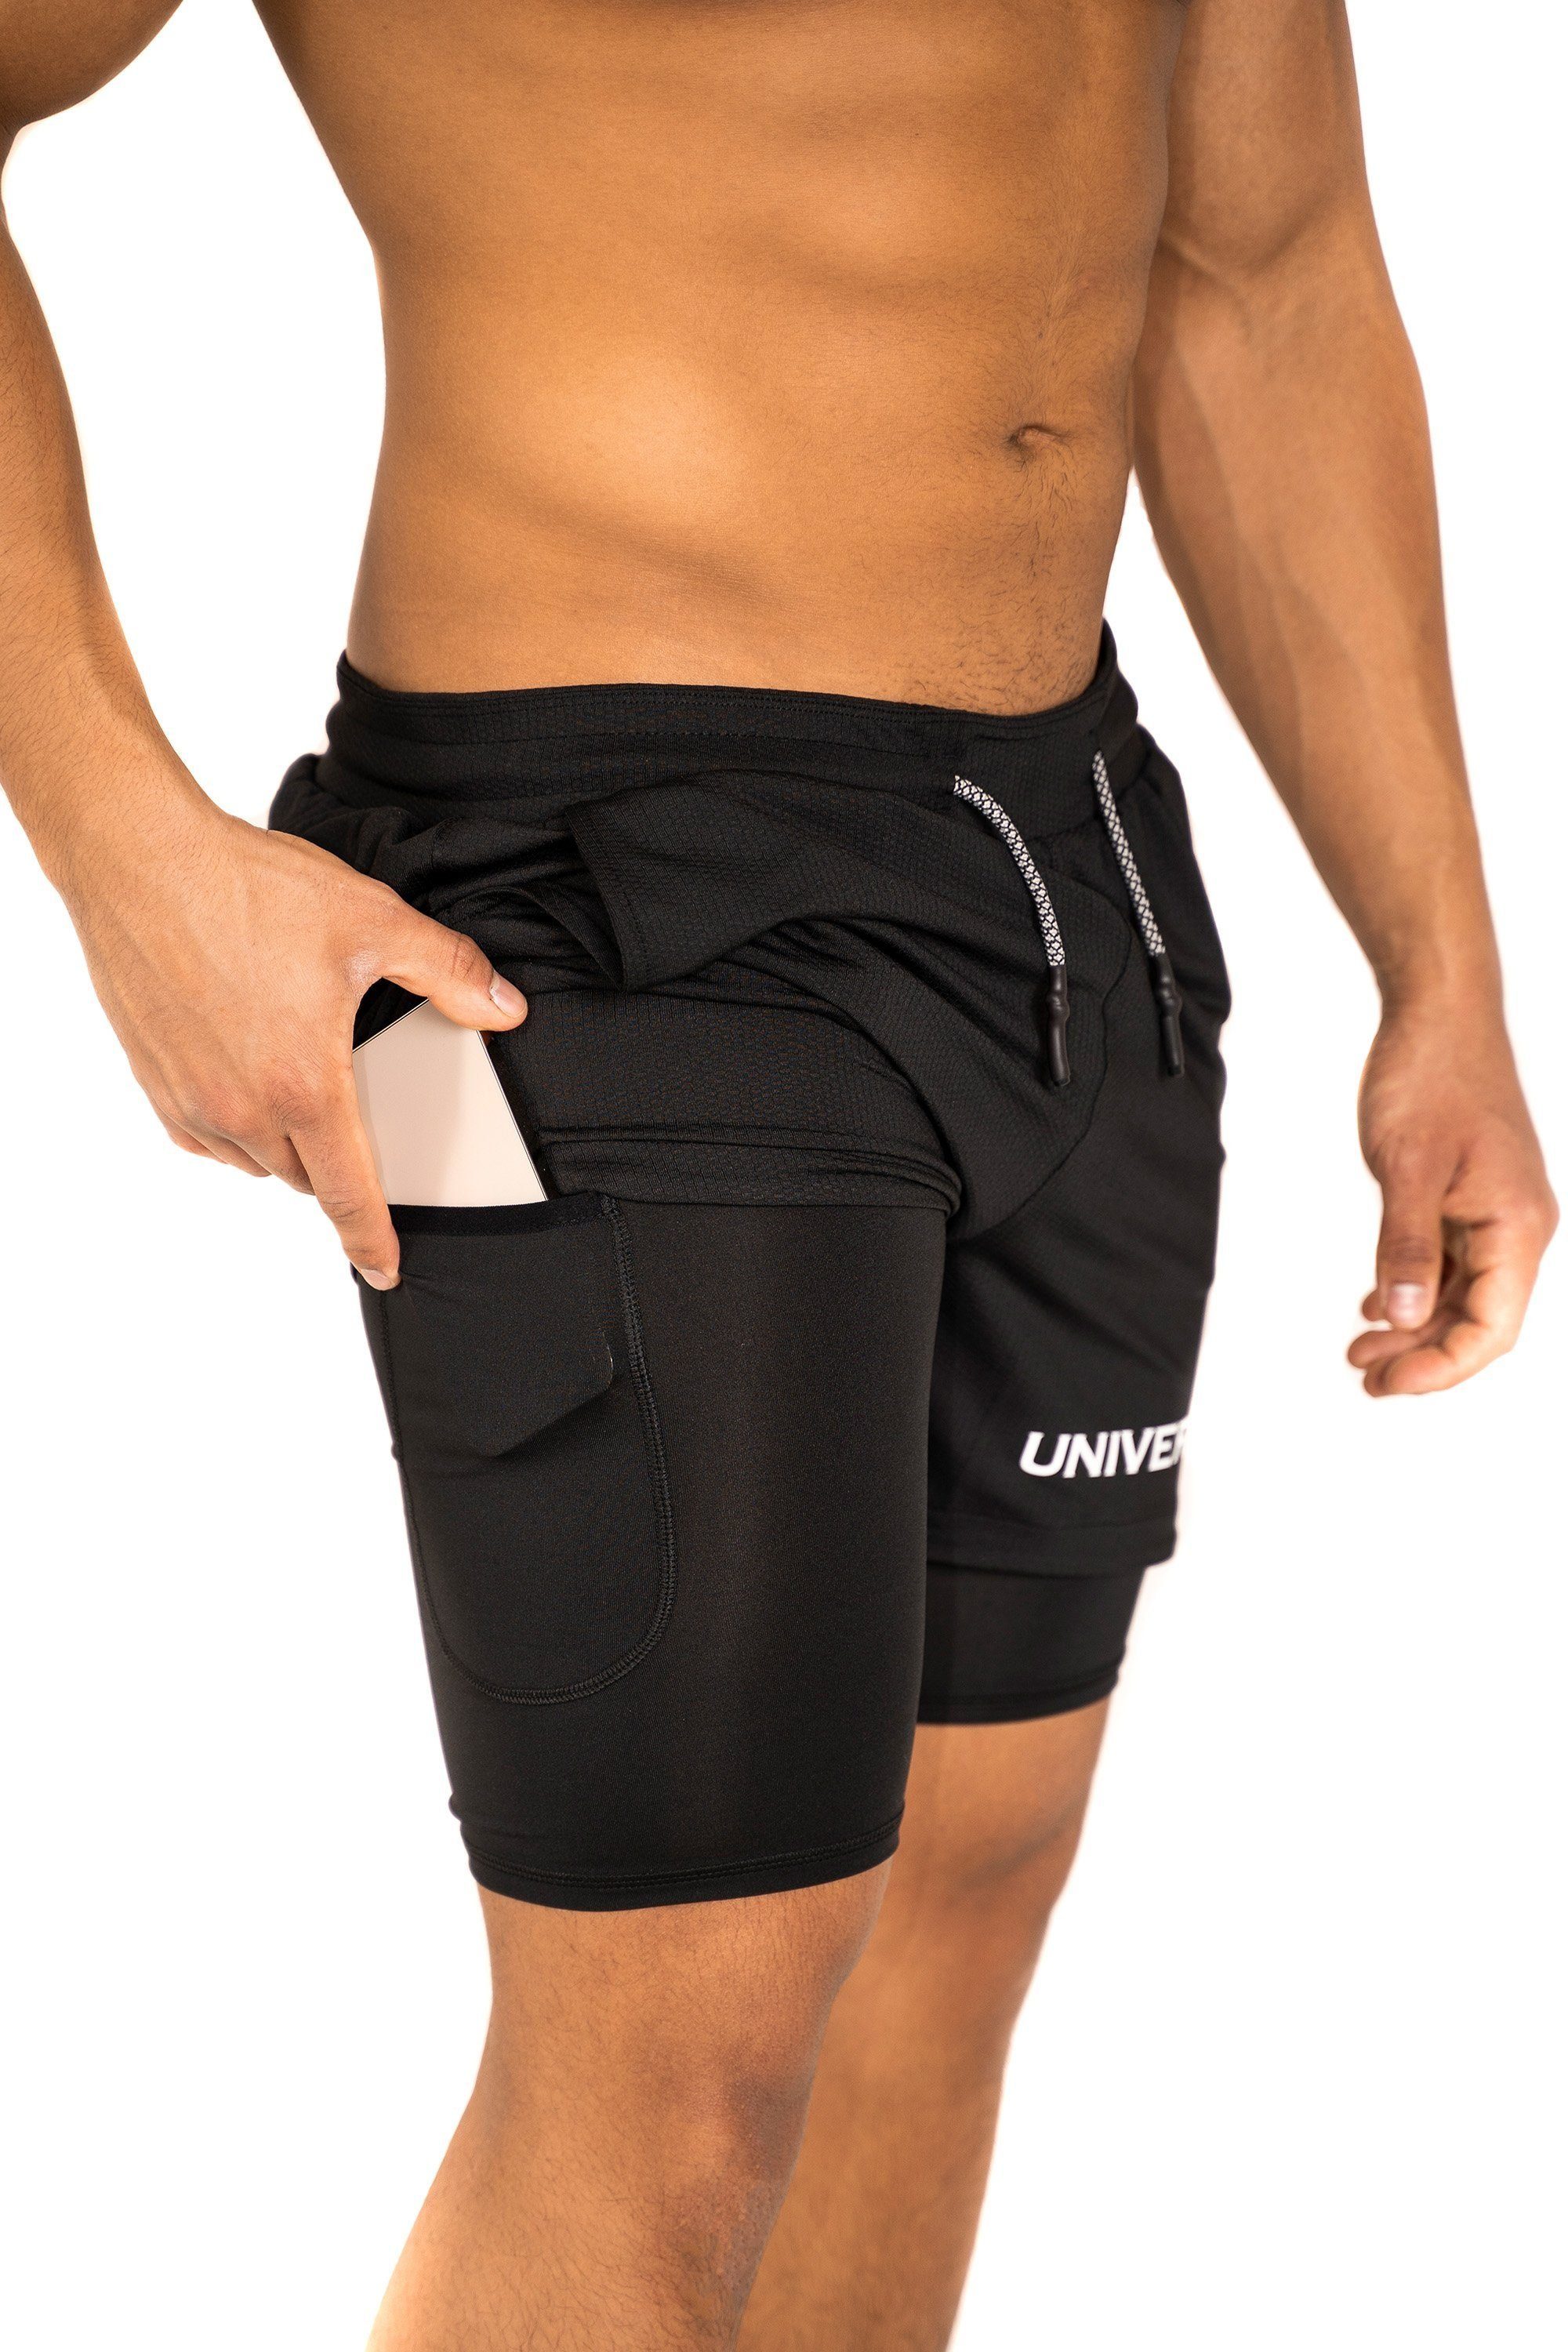 Shorts Hose schwarz Sporthose mit funktioneller mit Universum Sportwear versteckter Kurze Unterziehhose Handytasche